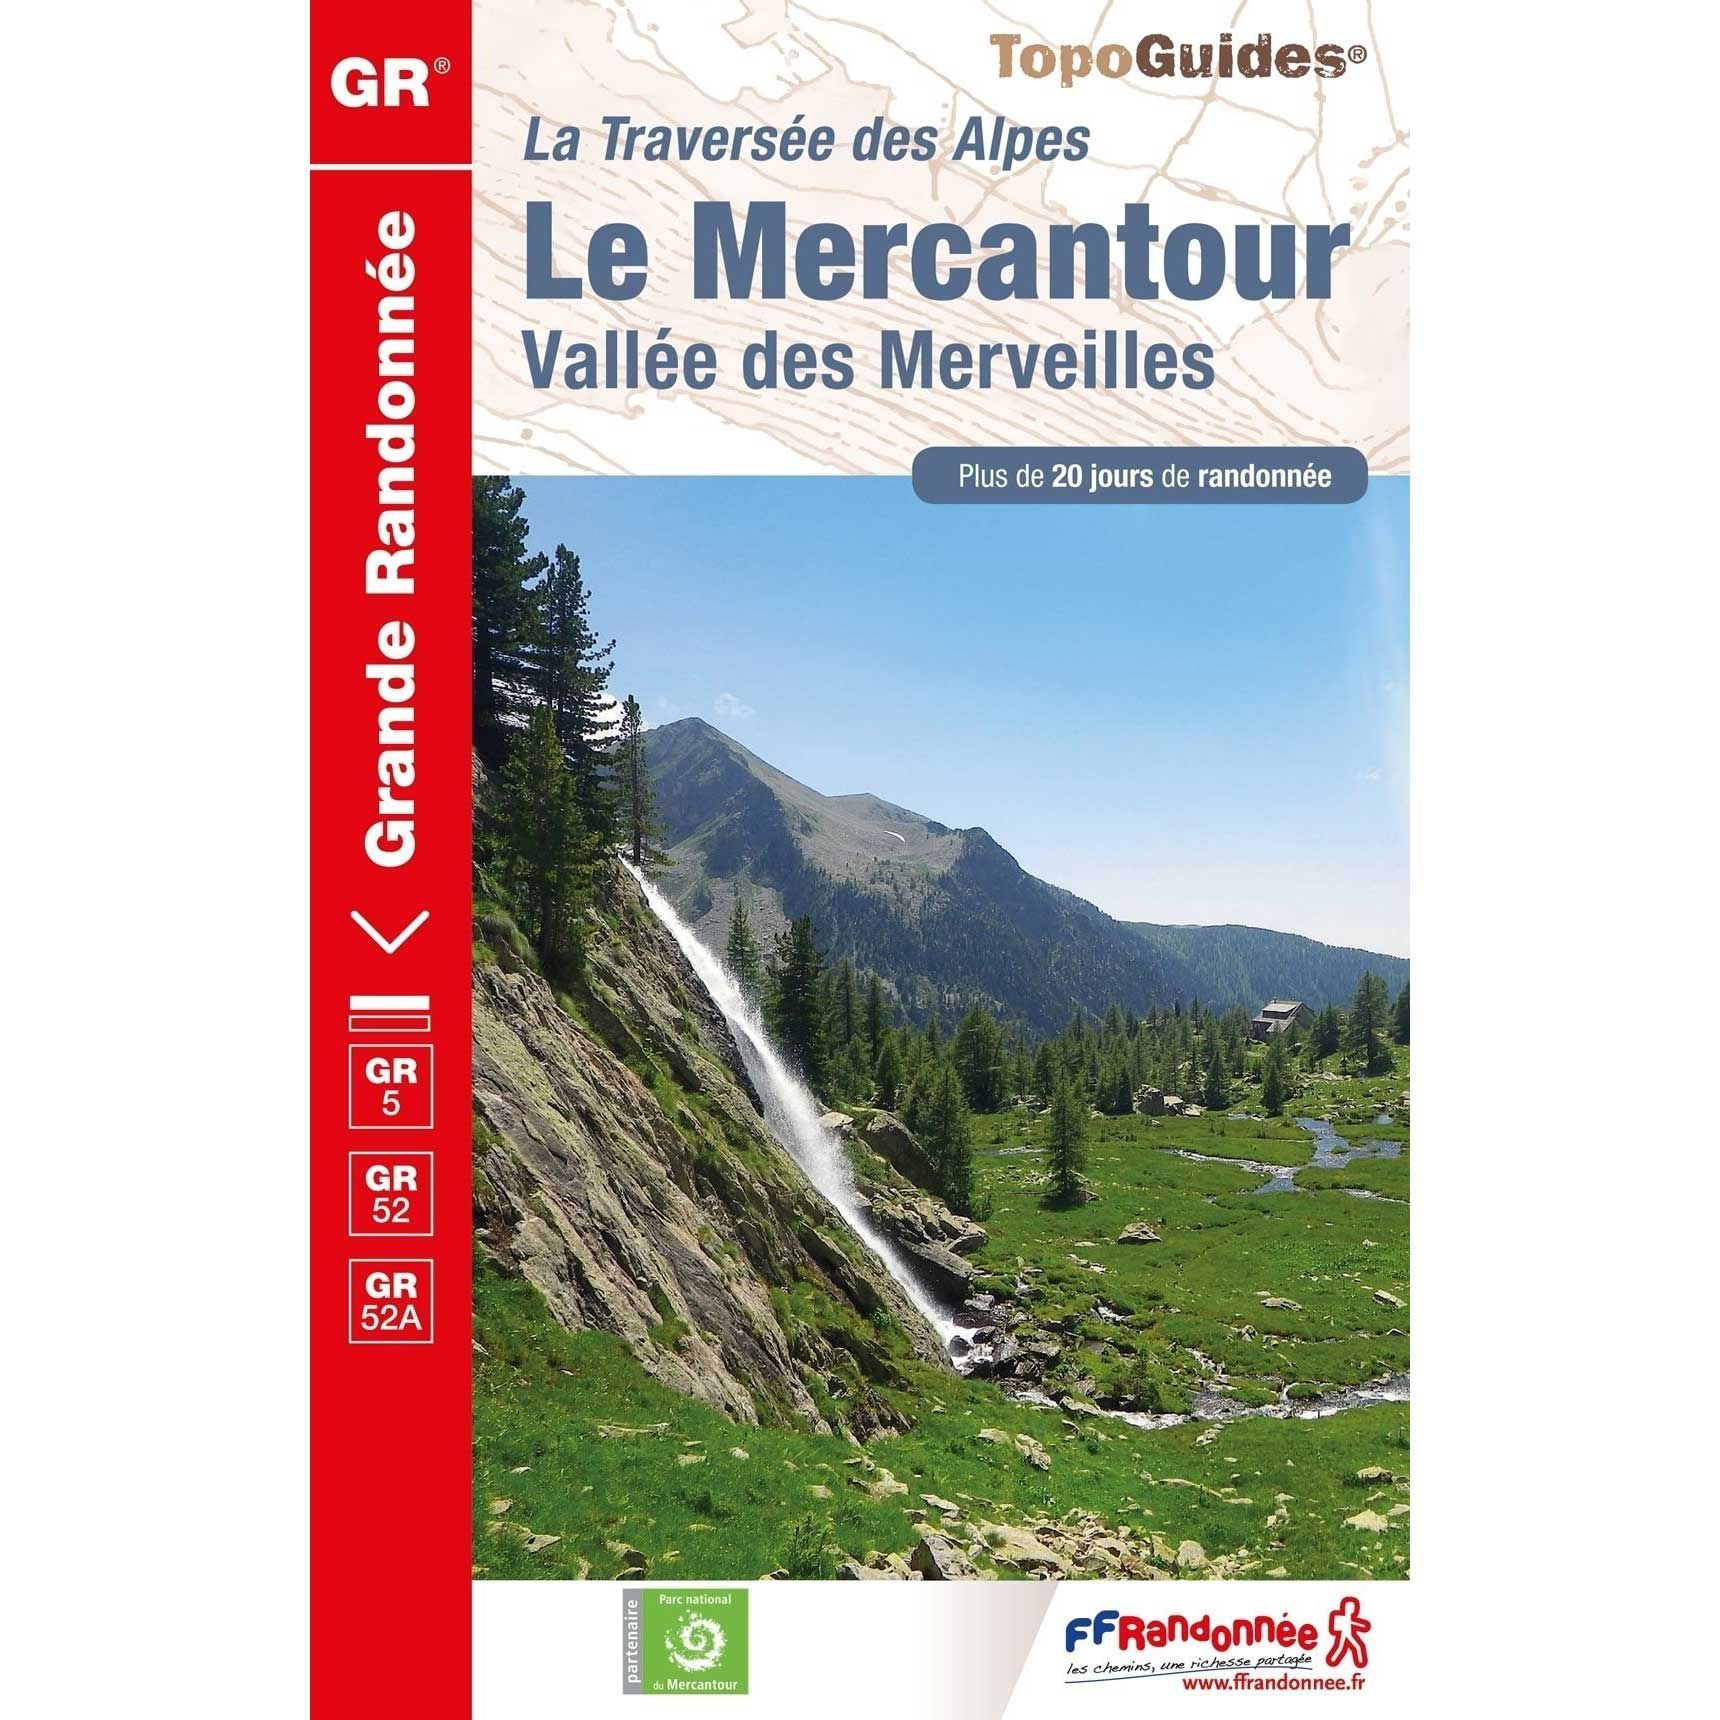 Topo Guide GR5 / GR52 / GR52A - Le Mercantour - Vallée des Merveilles